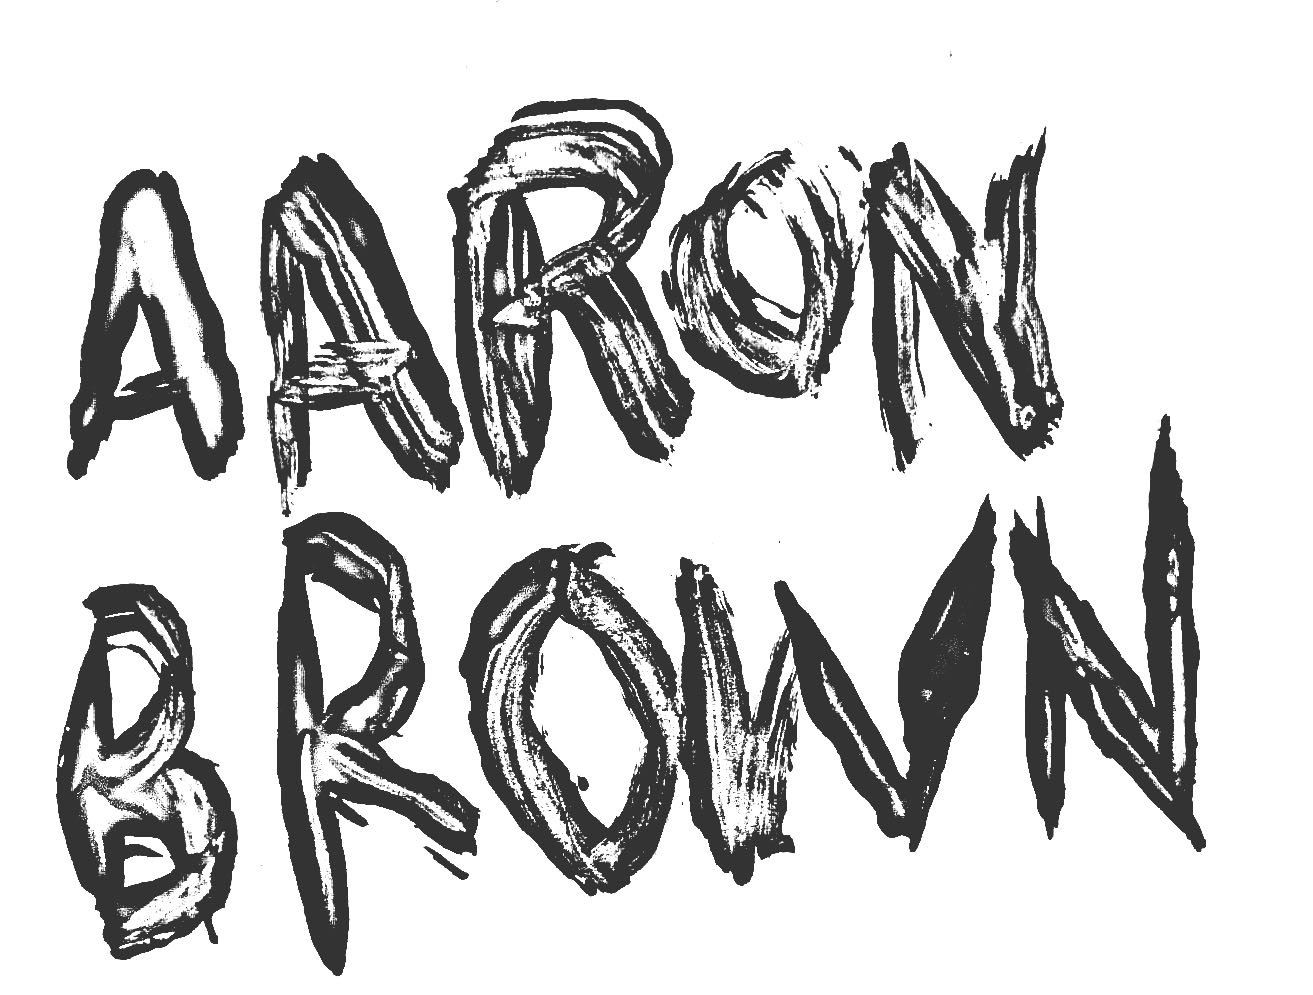 AARON BROWN